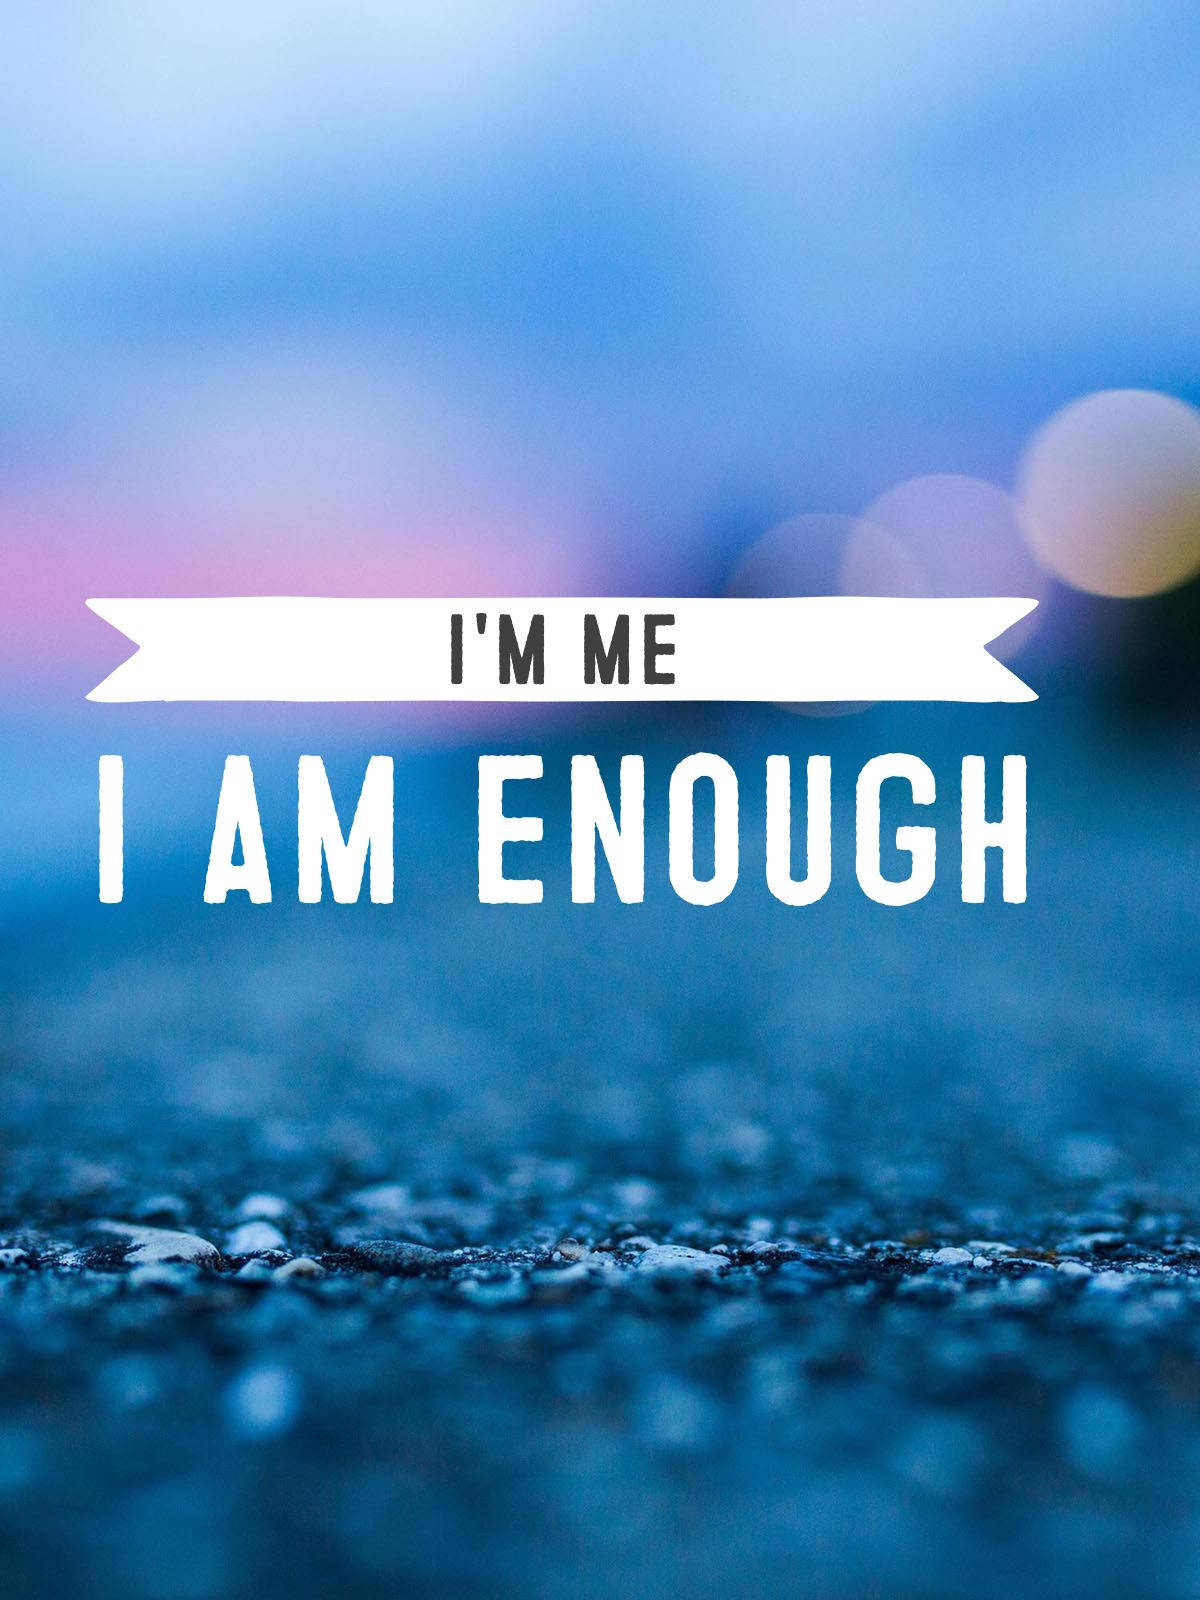 Download I'm Me I Am Enough Wallpaper | Wallpapers.com